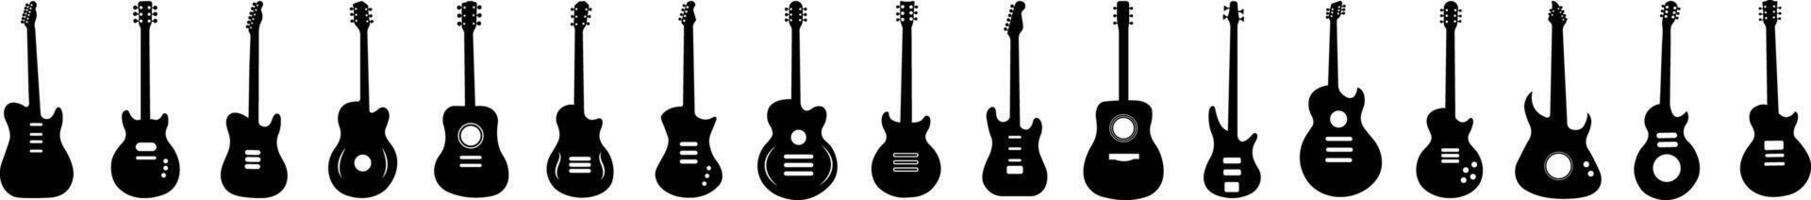 musical instruments acoustique et électrique guitare silhouette conception ensemble vecteur